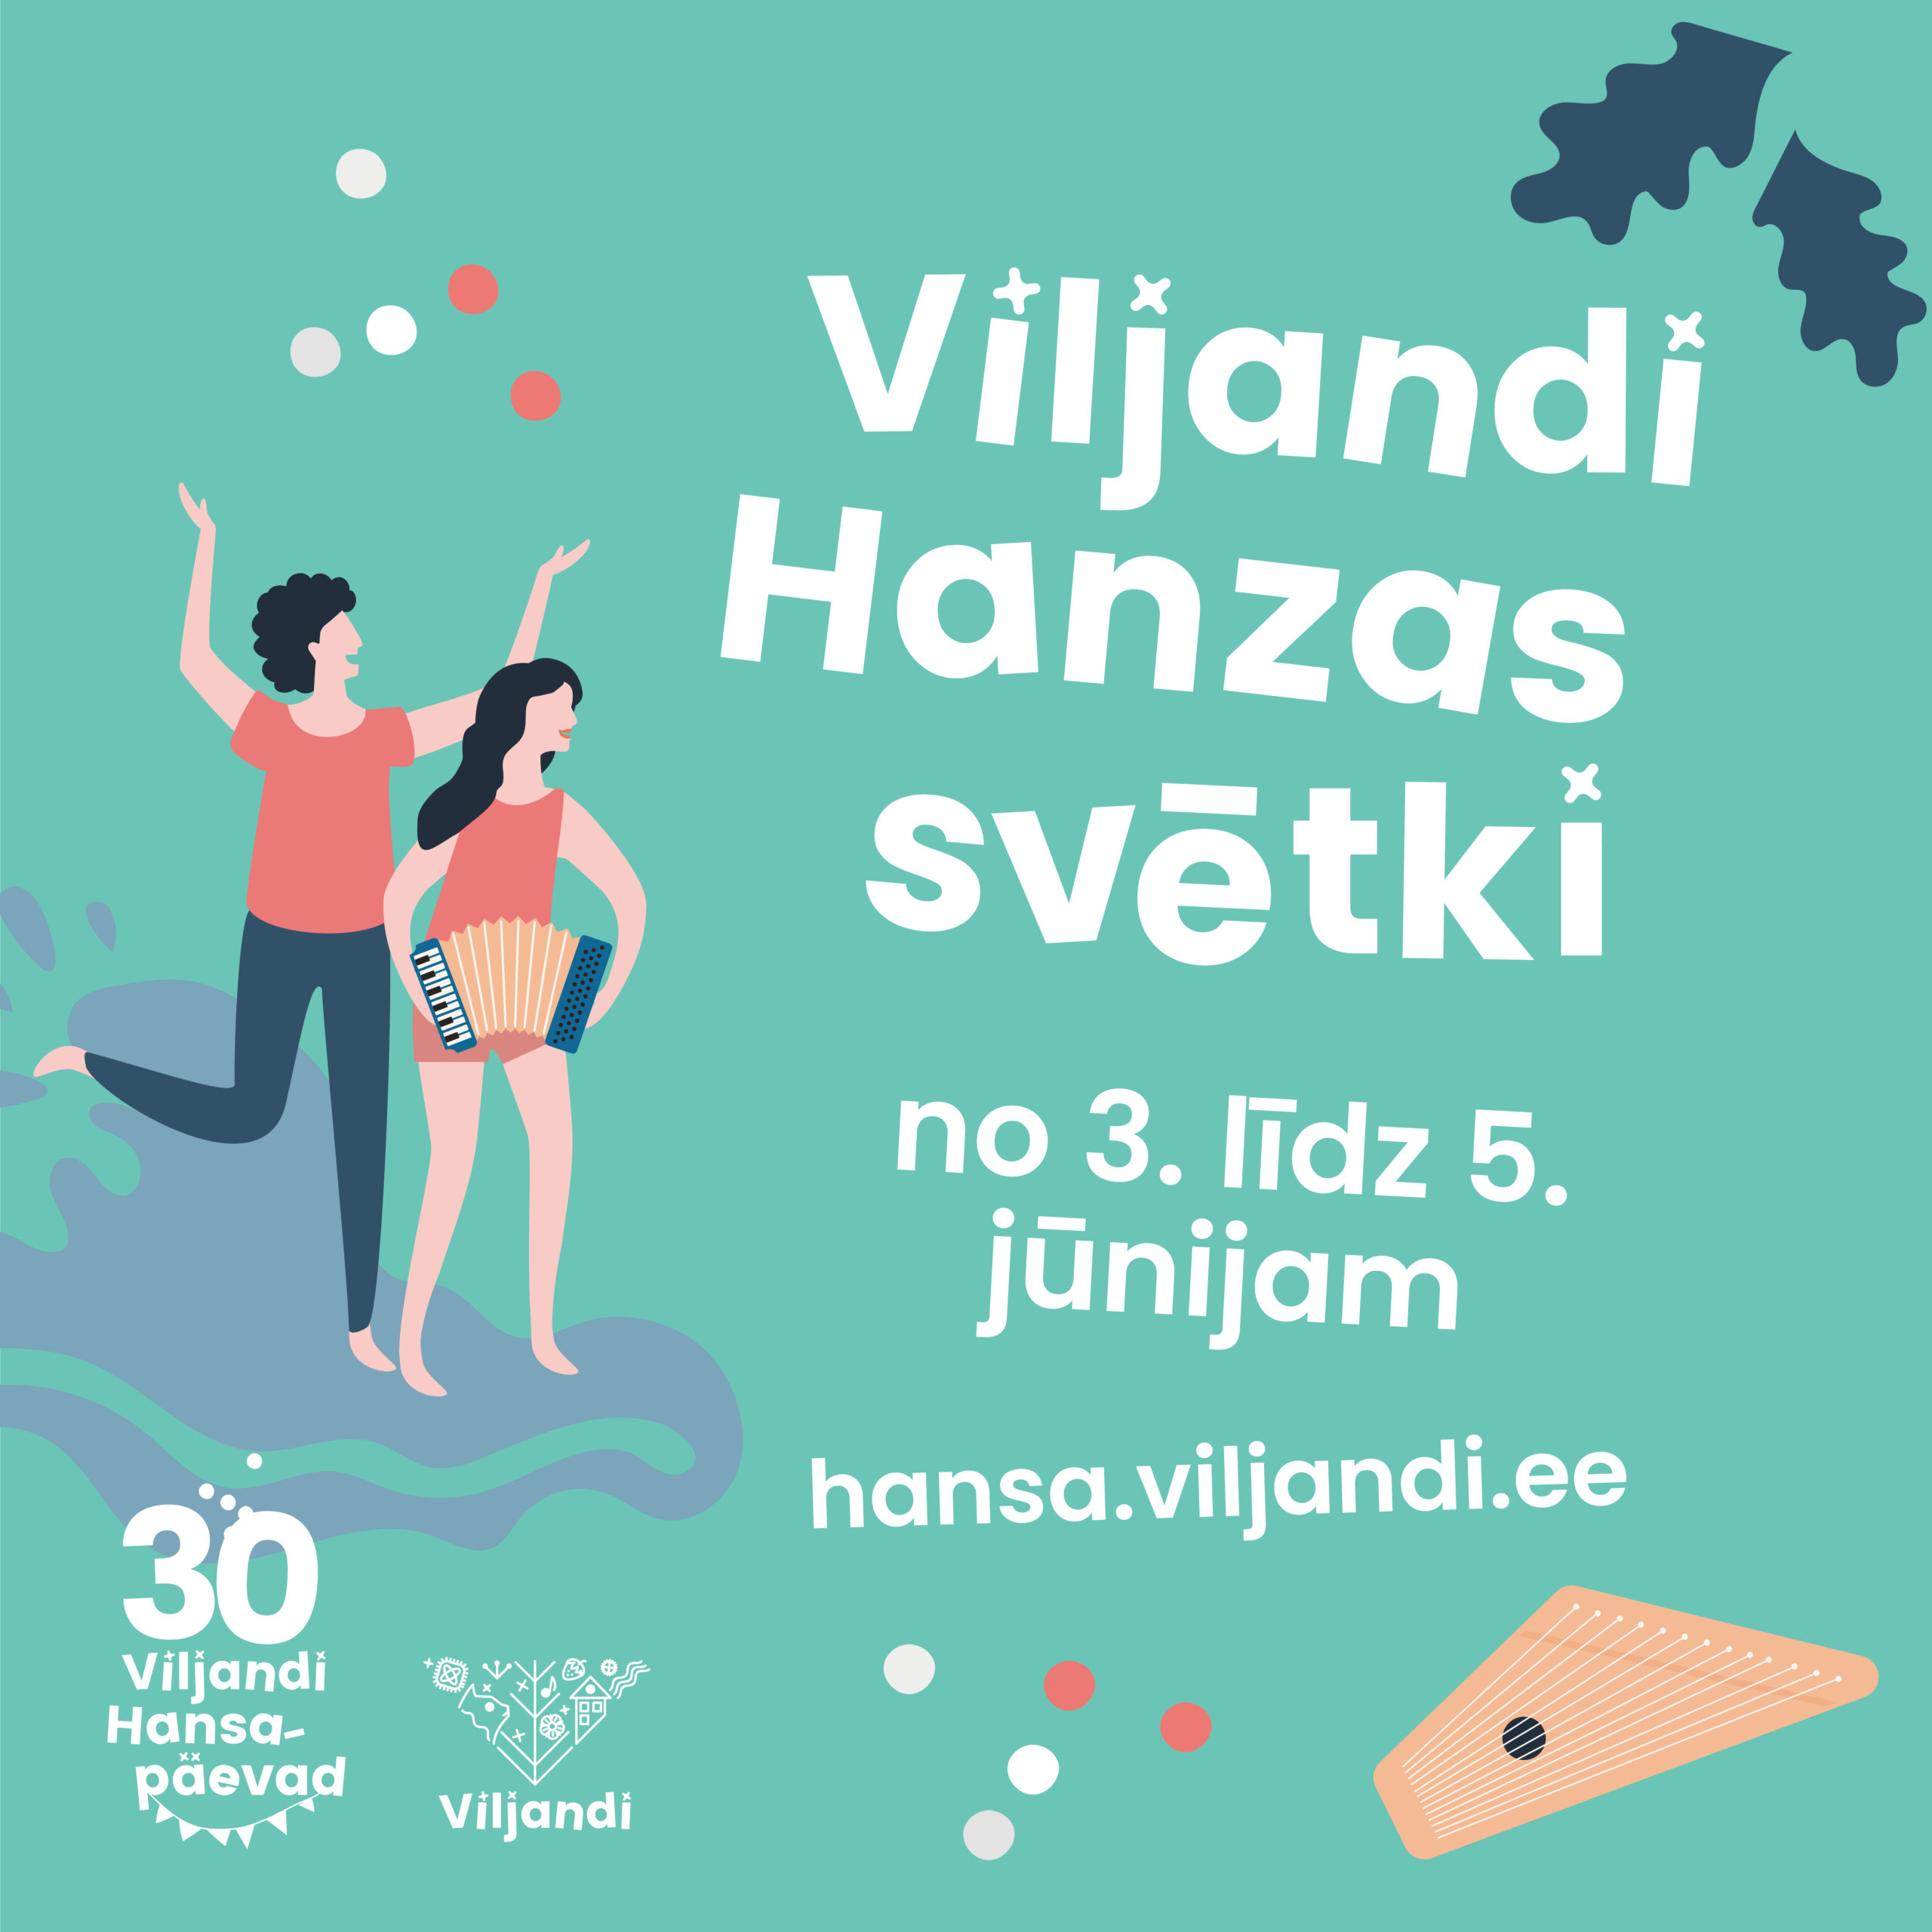 Vēsturiskajām un mūsdienu tradīcijām mijoties, no 3. līdz 5. jūnijam ar plašu kultūras piedāvājumu Igaunijā, Vīlandē norisināsies Hanzas dienas, kurās piedalīsies arī Latvijas Hanzas pilsētas, tostarp Valmiera.